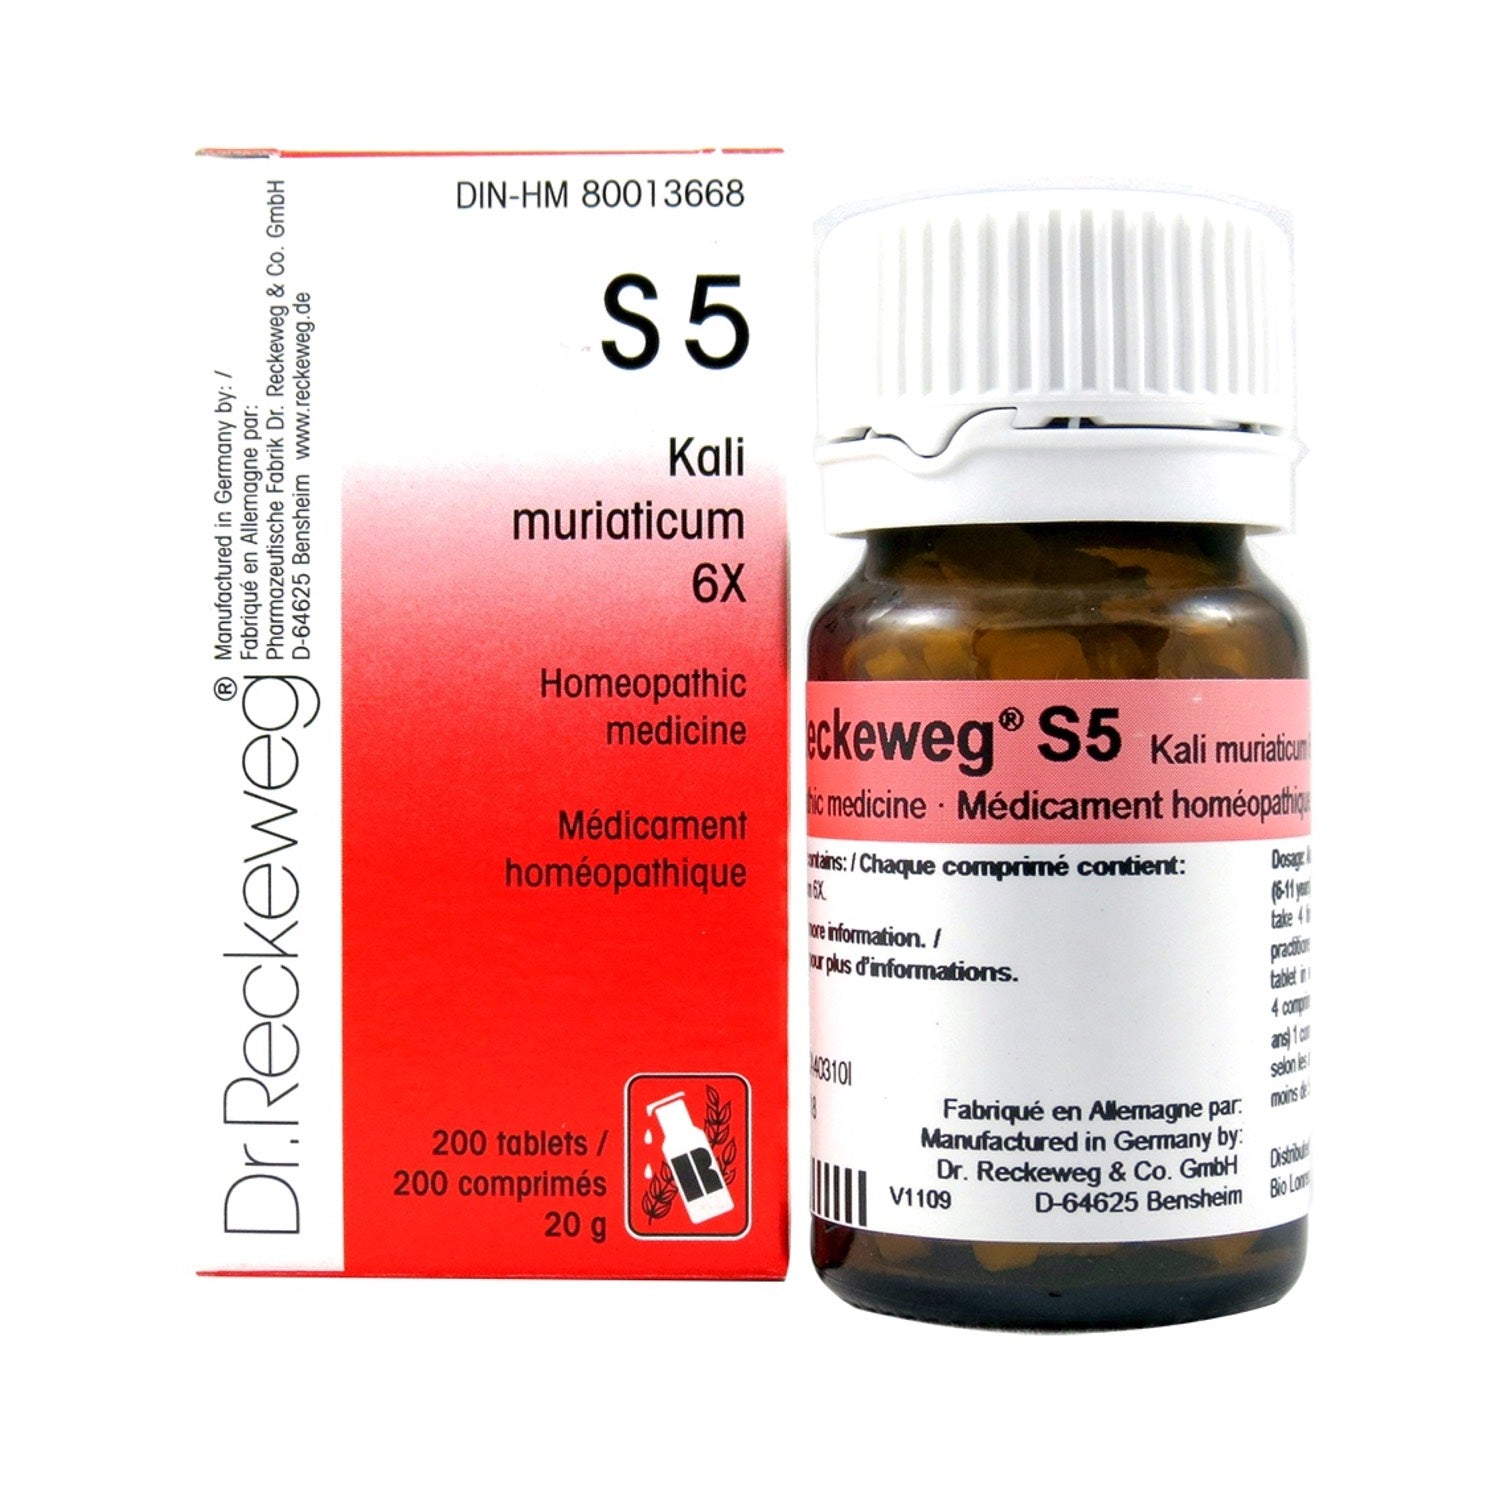 S5 Kali muriaticum Homeopathic medicine Schuessler salt 6X 200 tablets (20 g) - iwellnessbox